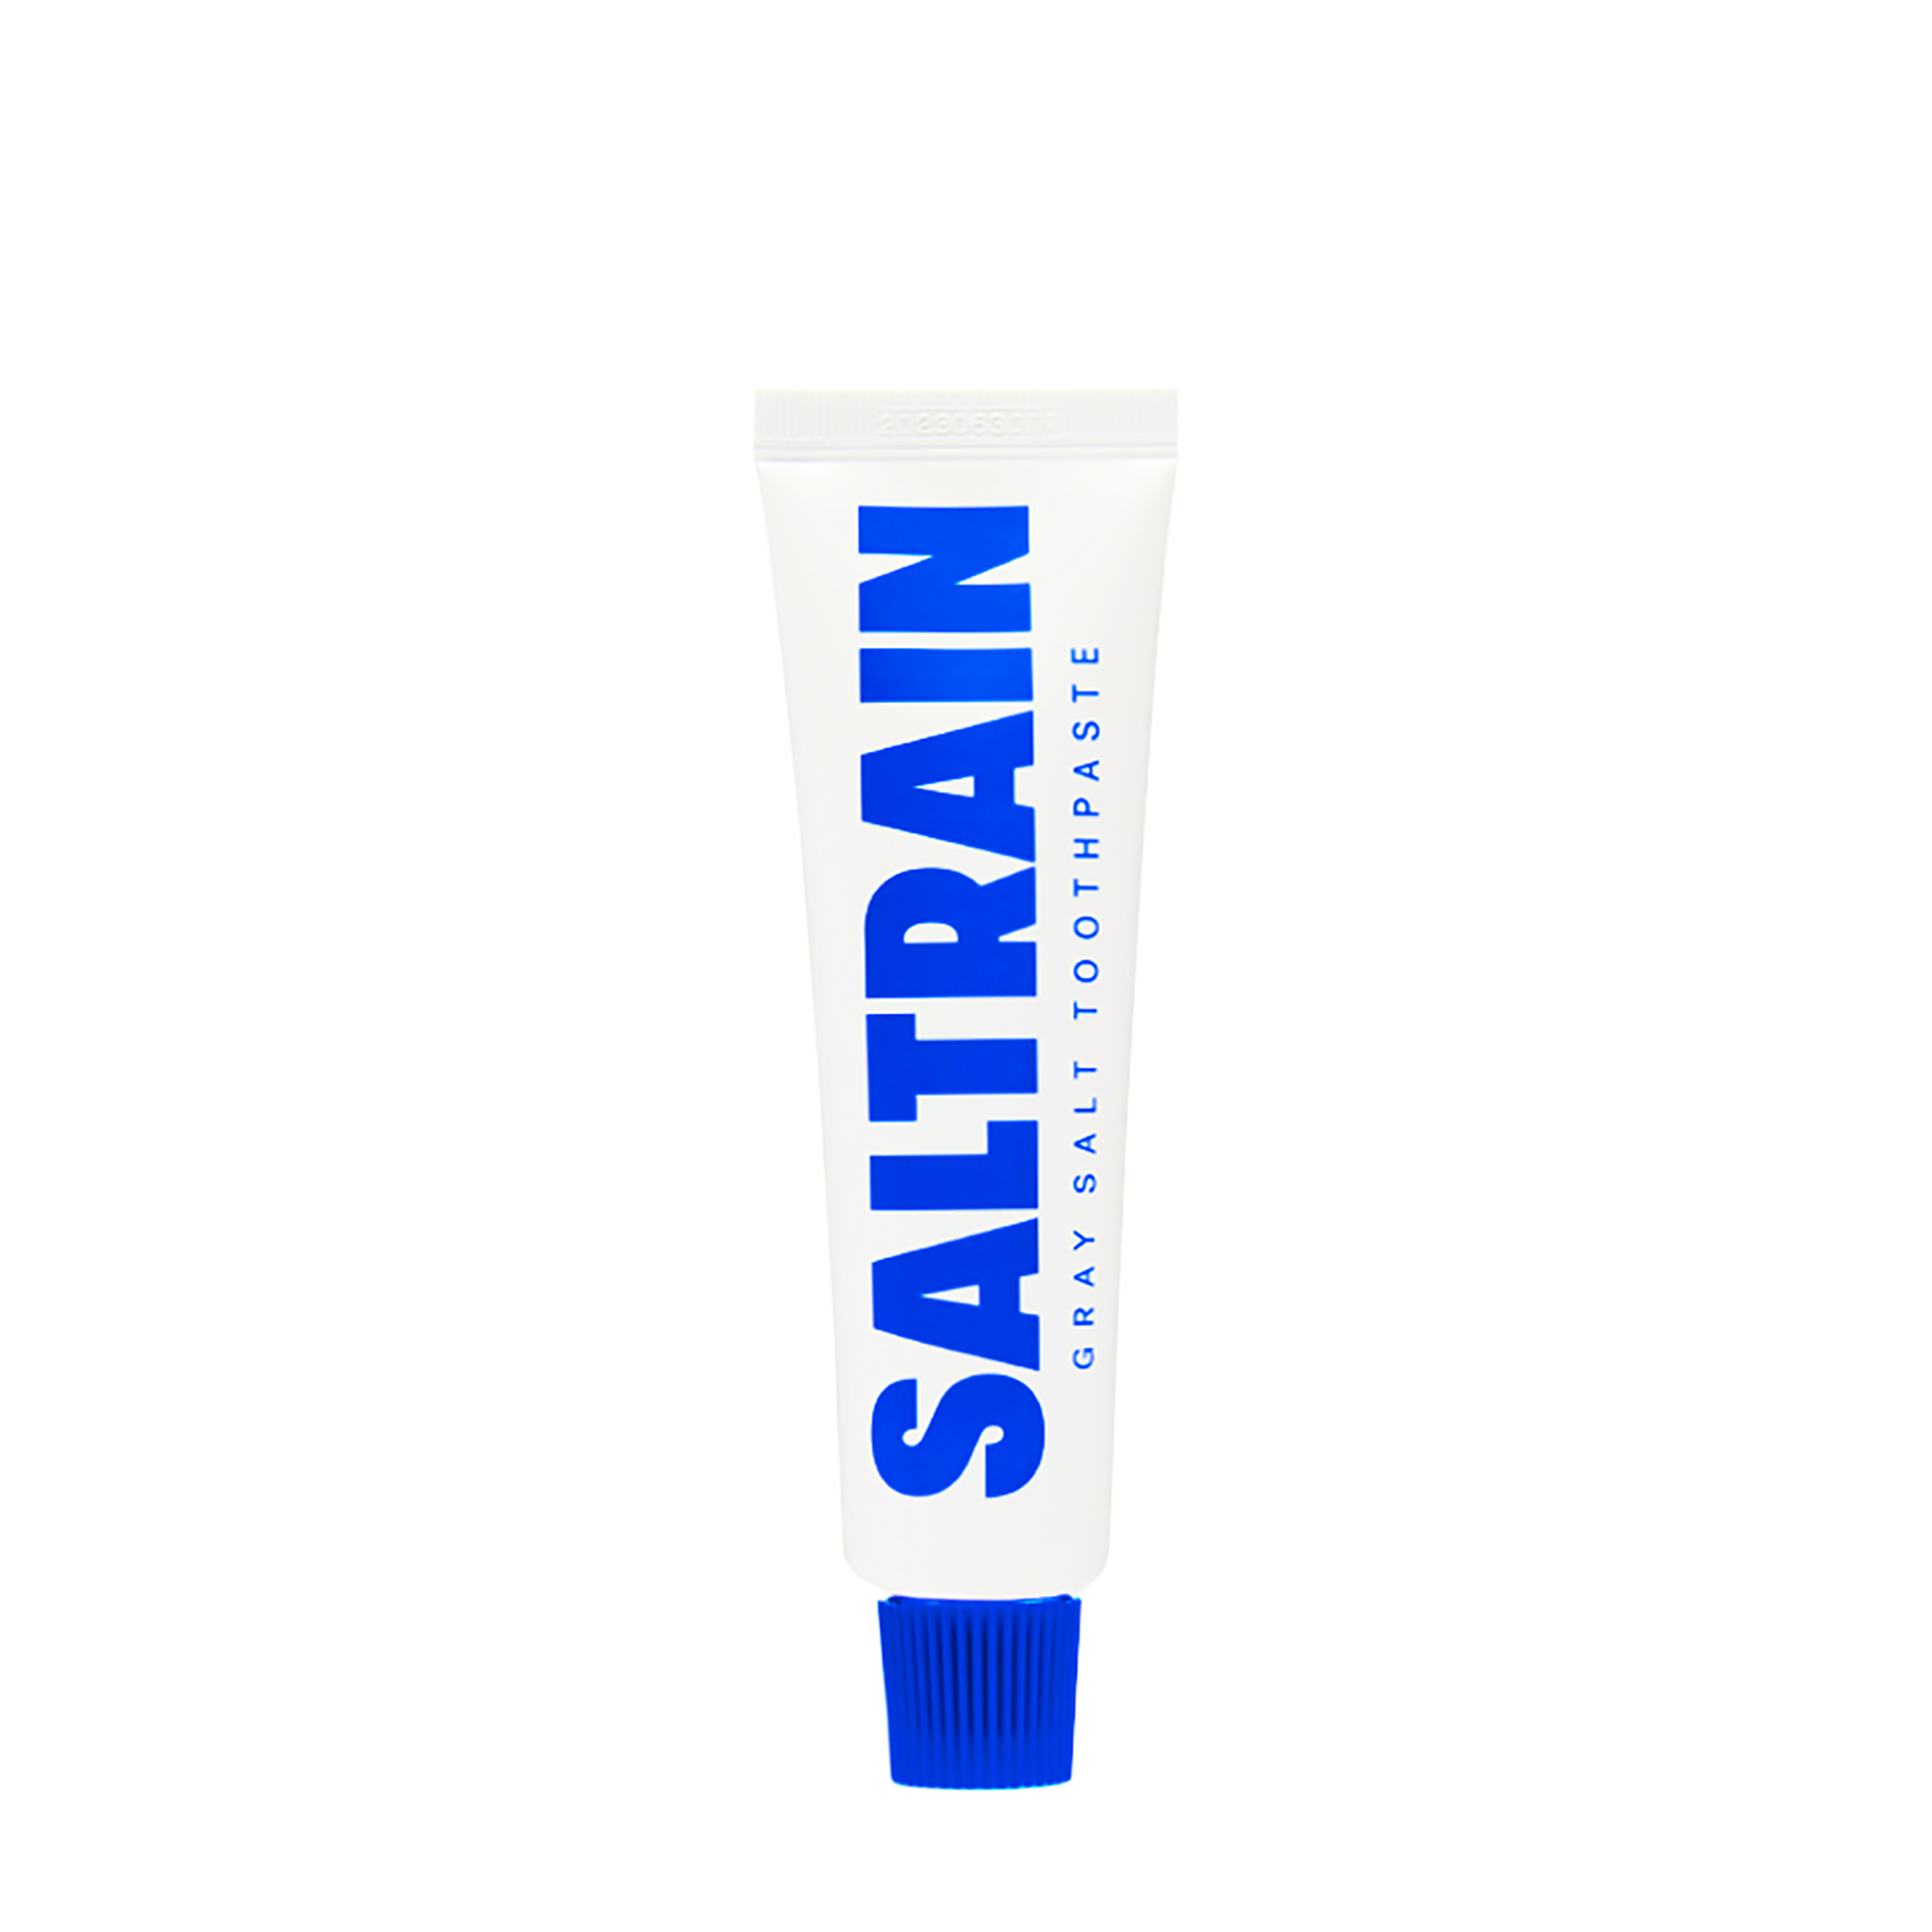 SALTRAIN SALTRAIN Зубная паста без фтора Gray Salt Toothpaste в дорожном формате 30 гр